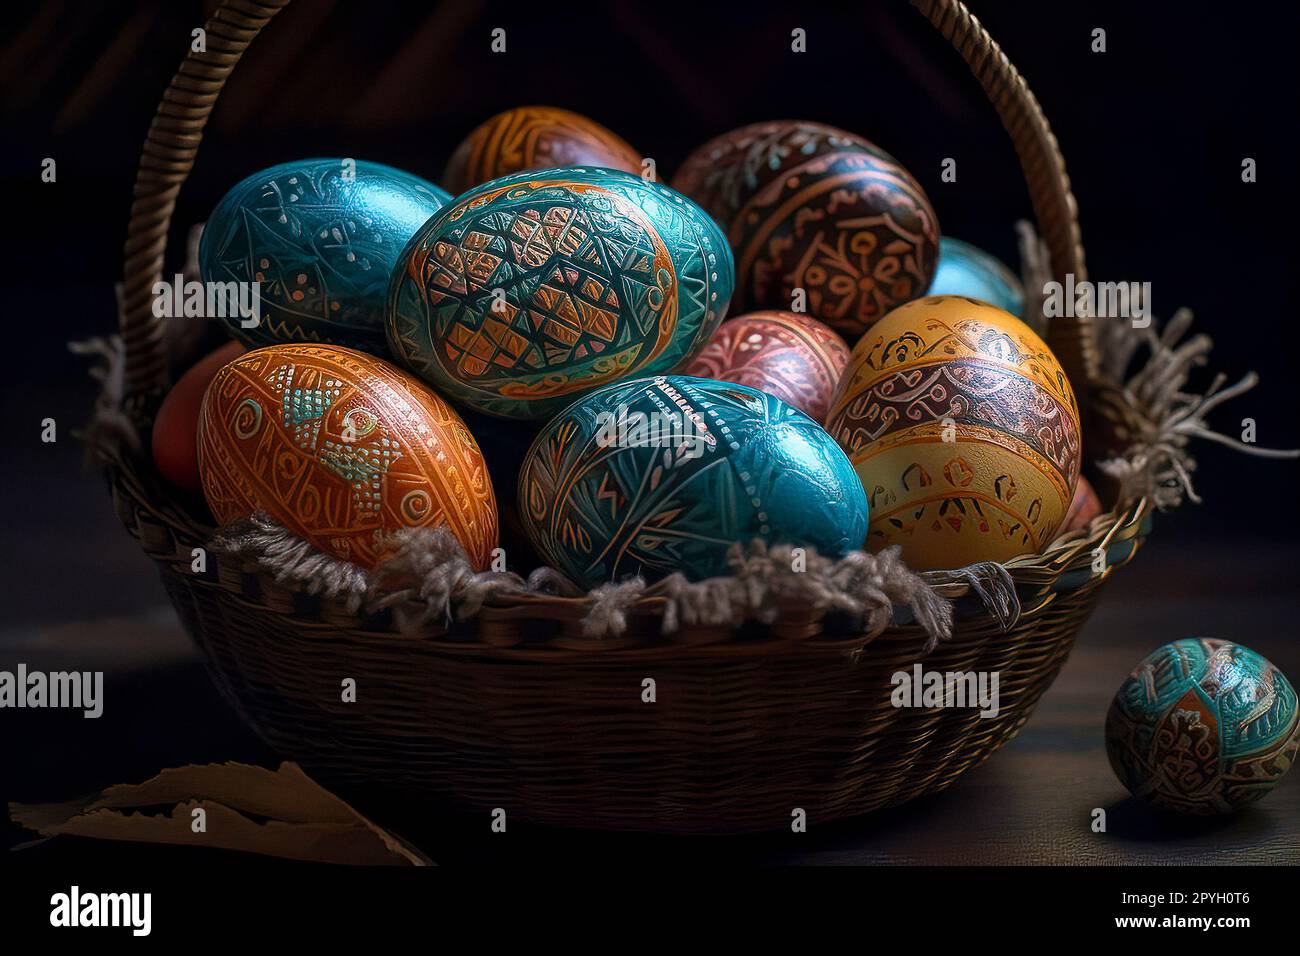 Vue rapprochée d'un panier rempli d'œufs de Pâques aux couleurs vives sur  fond sombre, pour capturer l'essence festive et joyeuse de la saison de  Pâques Photo Stock - Alamy